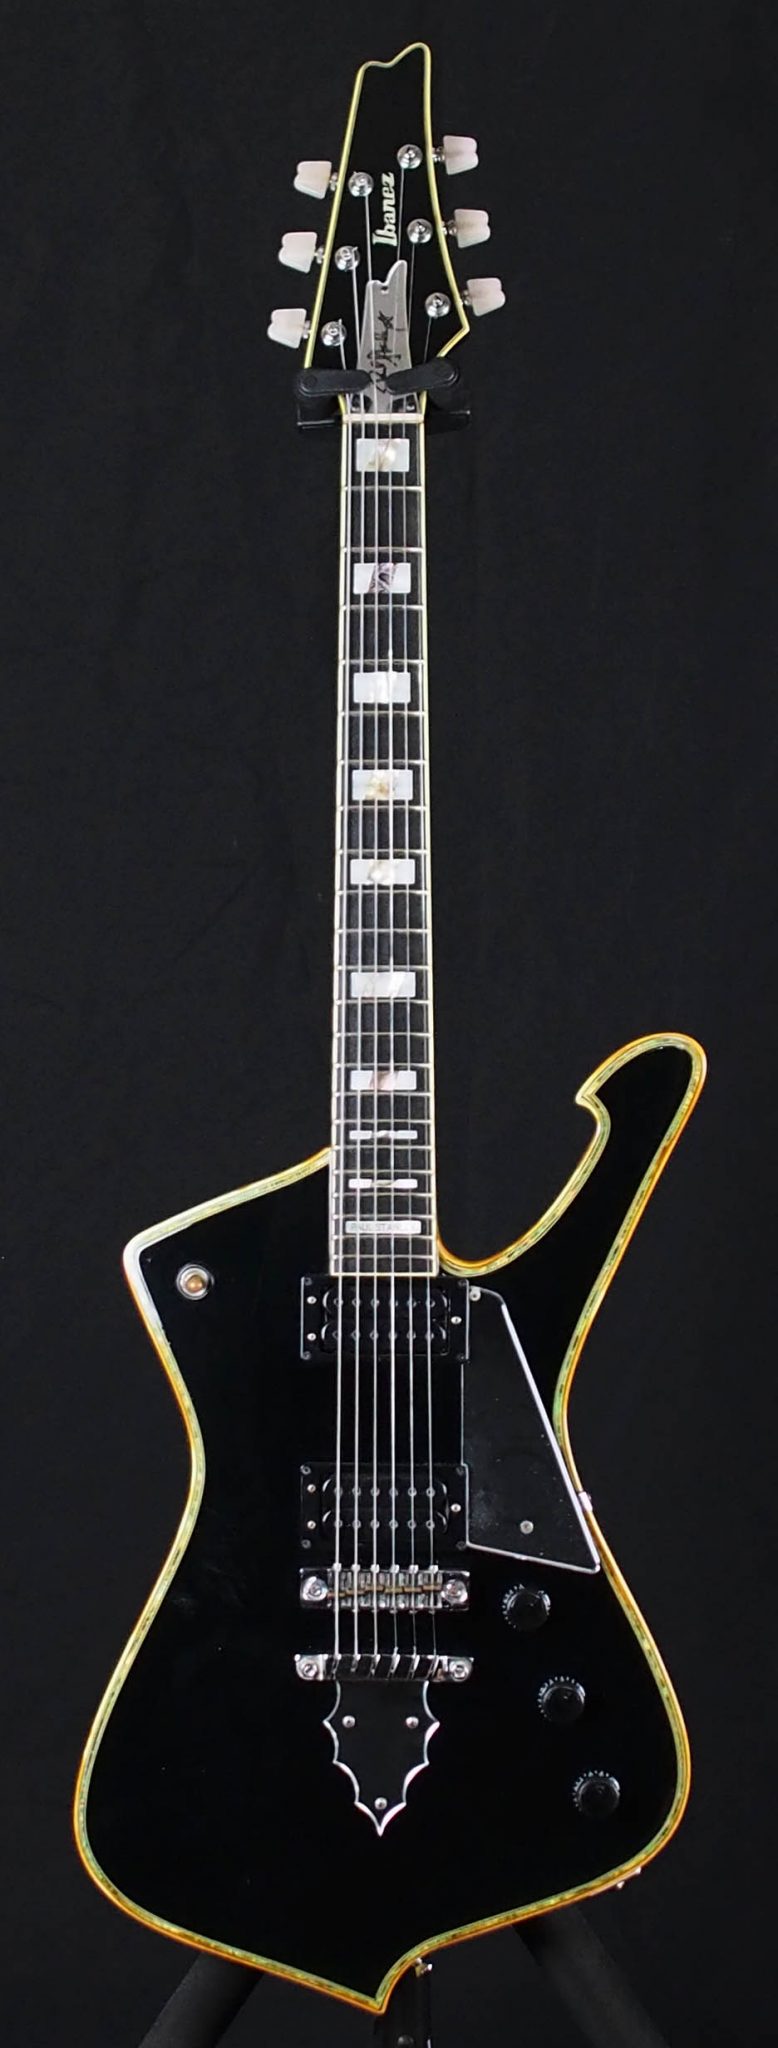 買取情報 Kiss ポール スタンレーモデル Ibanez Ps10 Paul Stanley 楽器奏庫 初心者歓迎 ギター好きのヒミツ基地